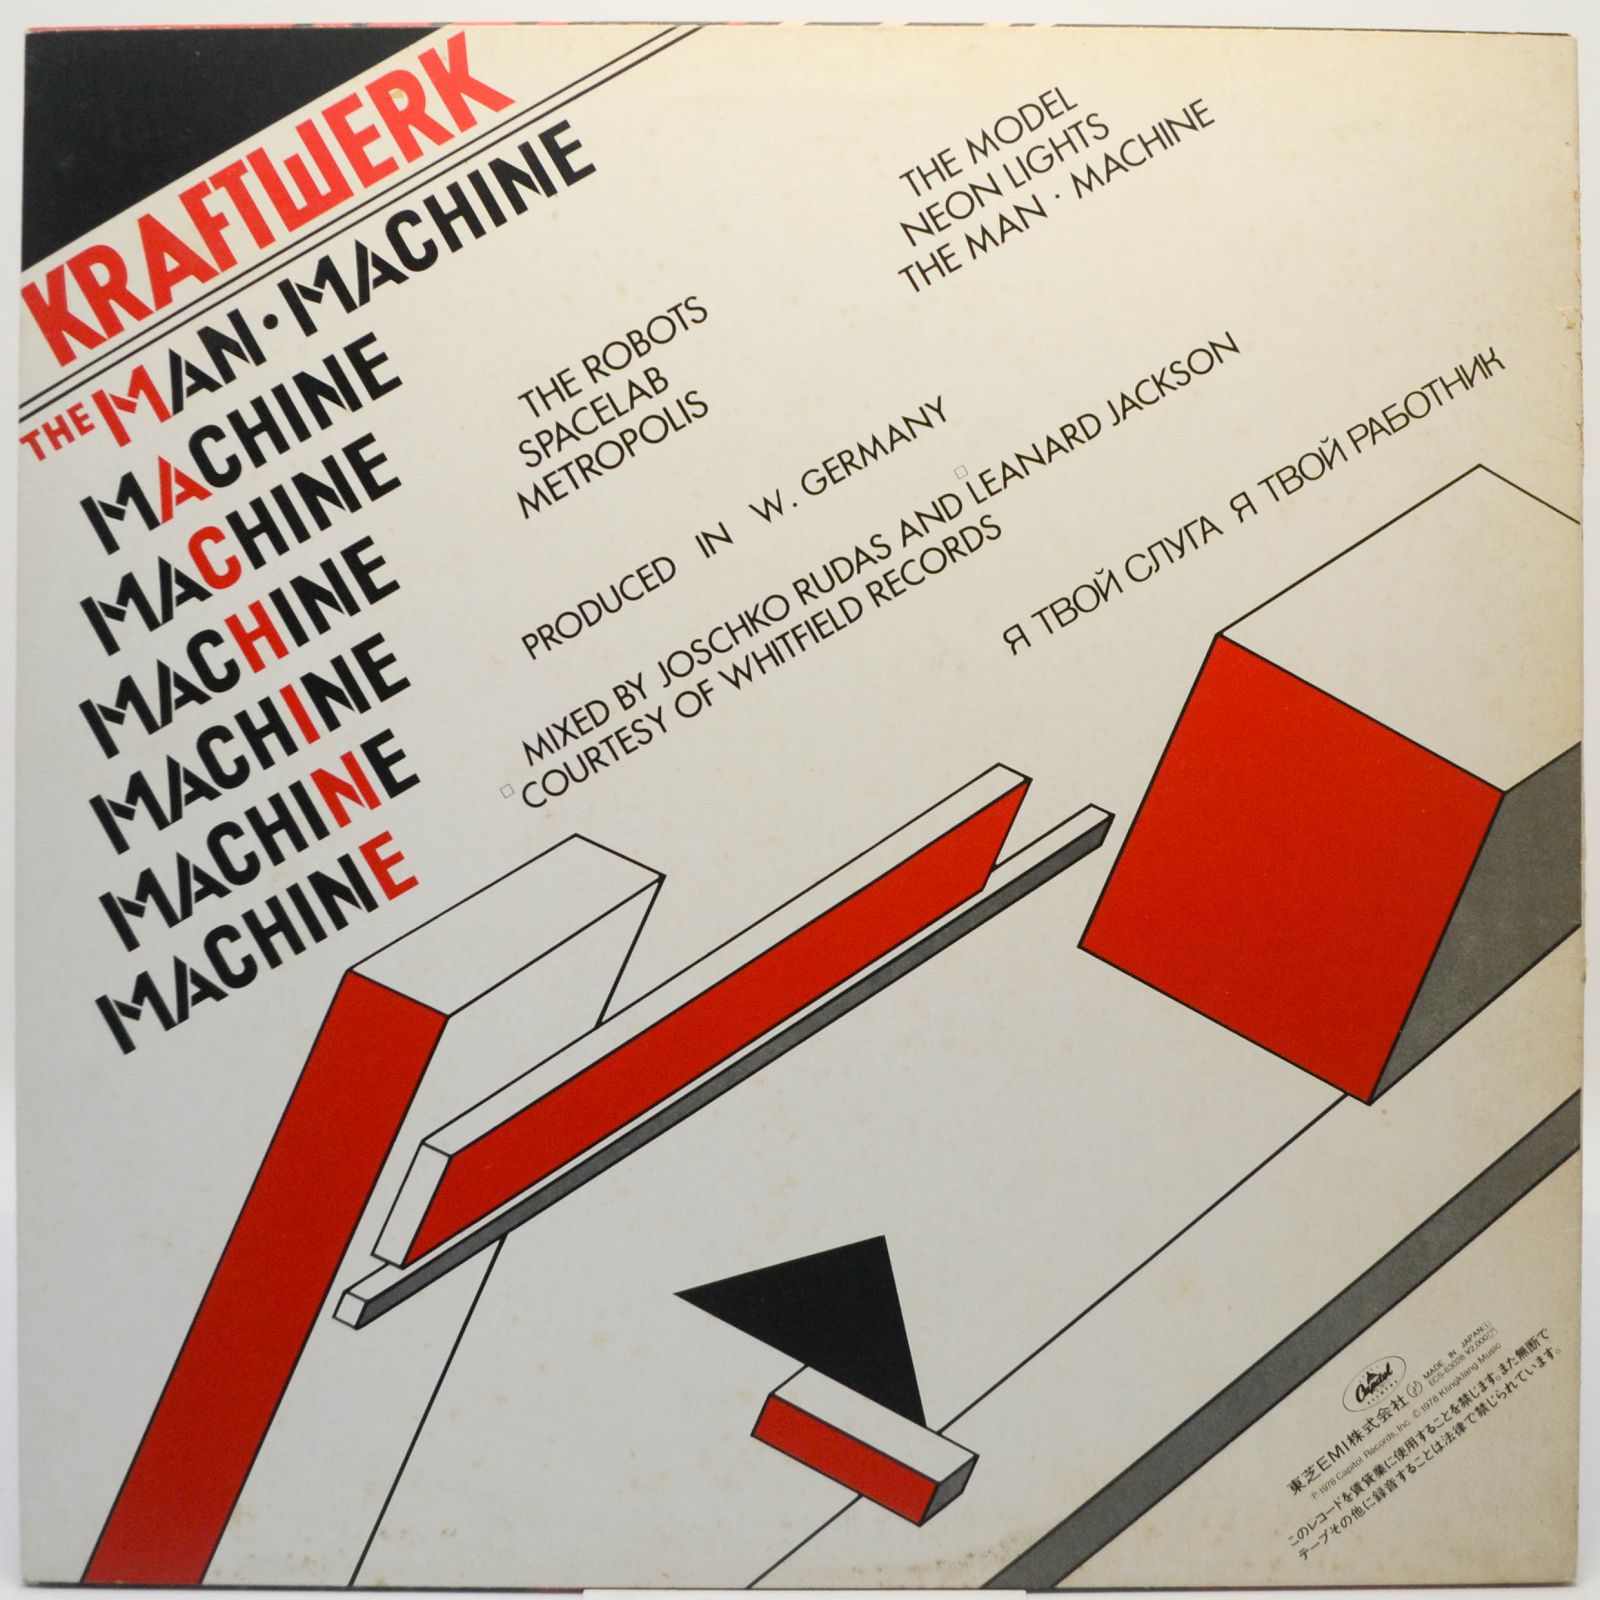 Kraftwerk — The Man Machine, 1978